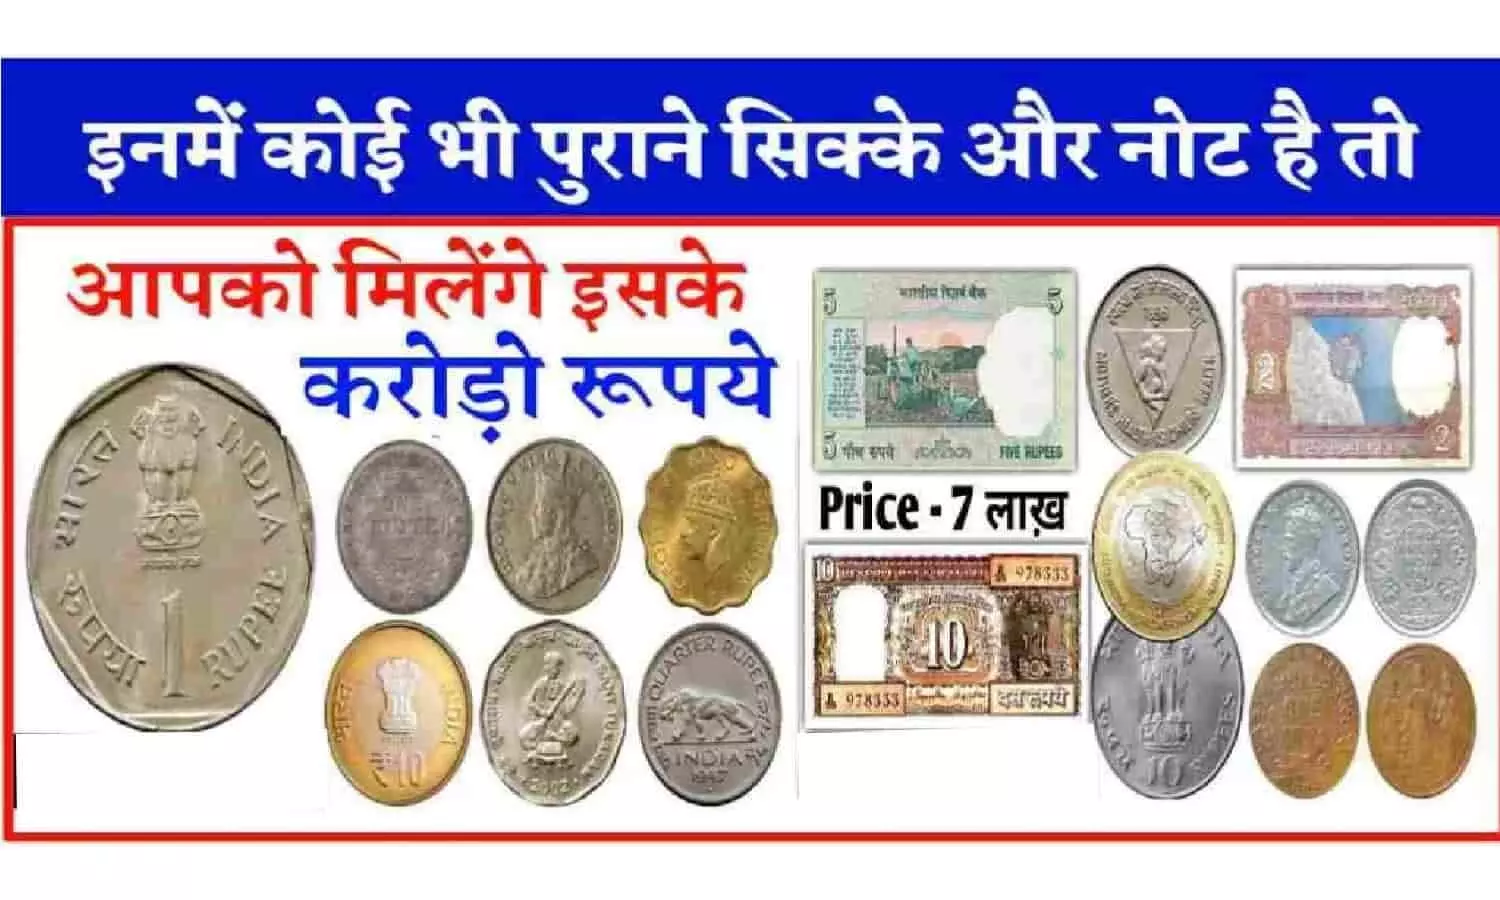 One Rupee Old Coin Selling Online: ये एक का सिक्का आपको बना देगा करोड़पति, फटाफट संदूक से निकाले